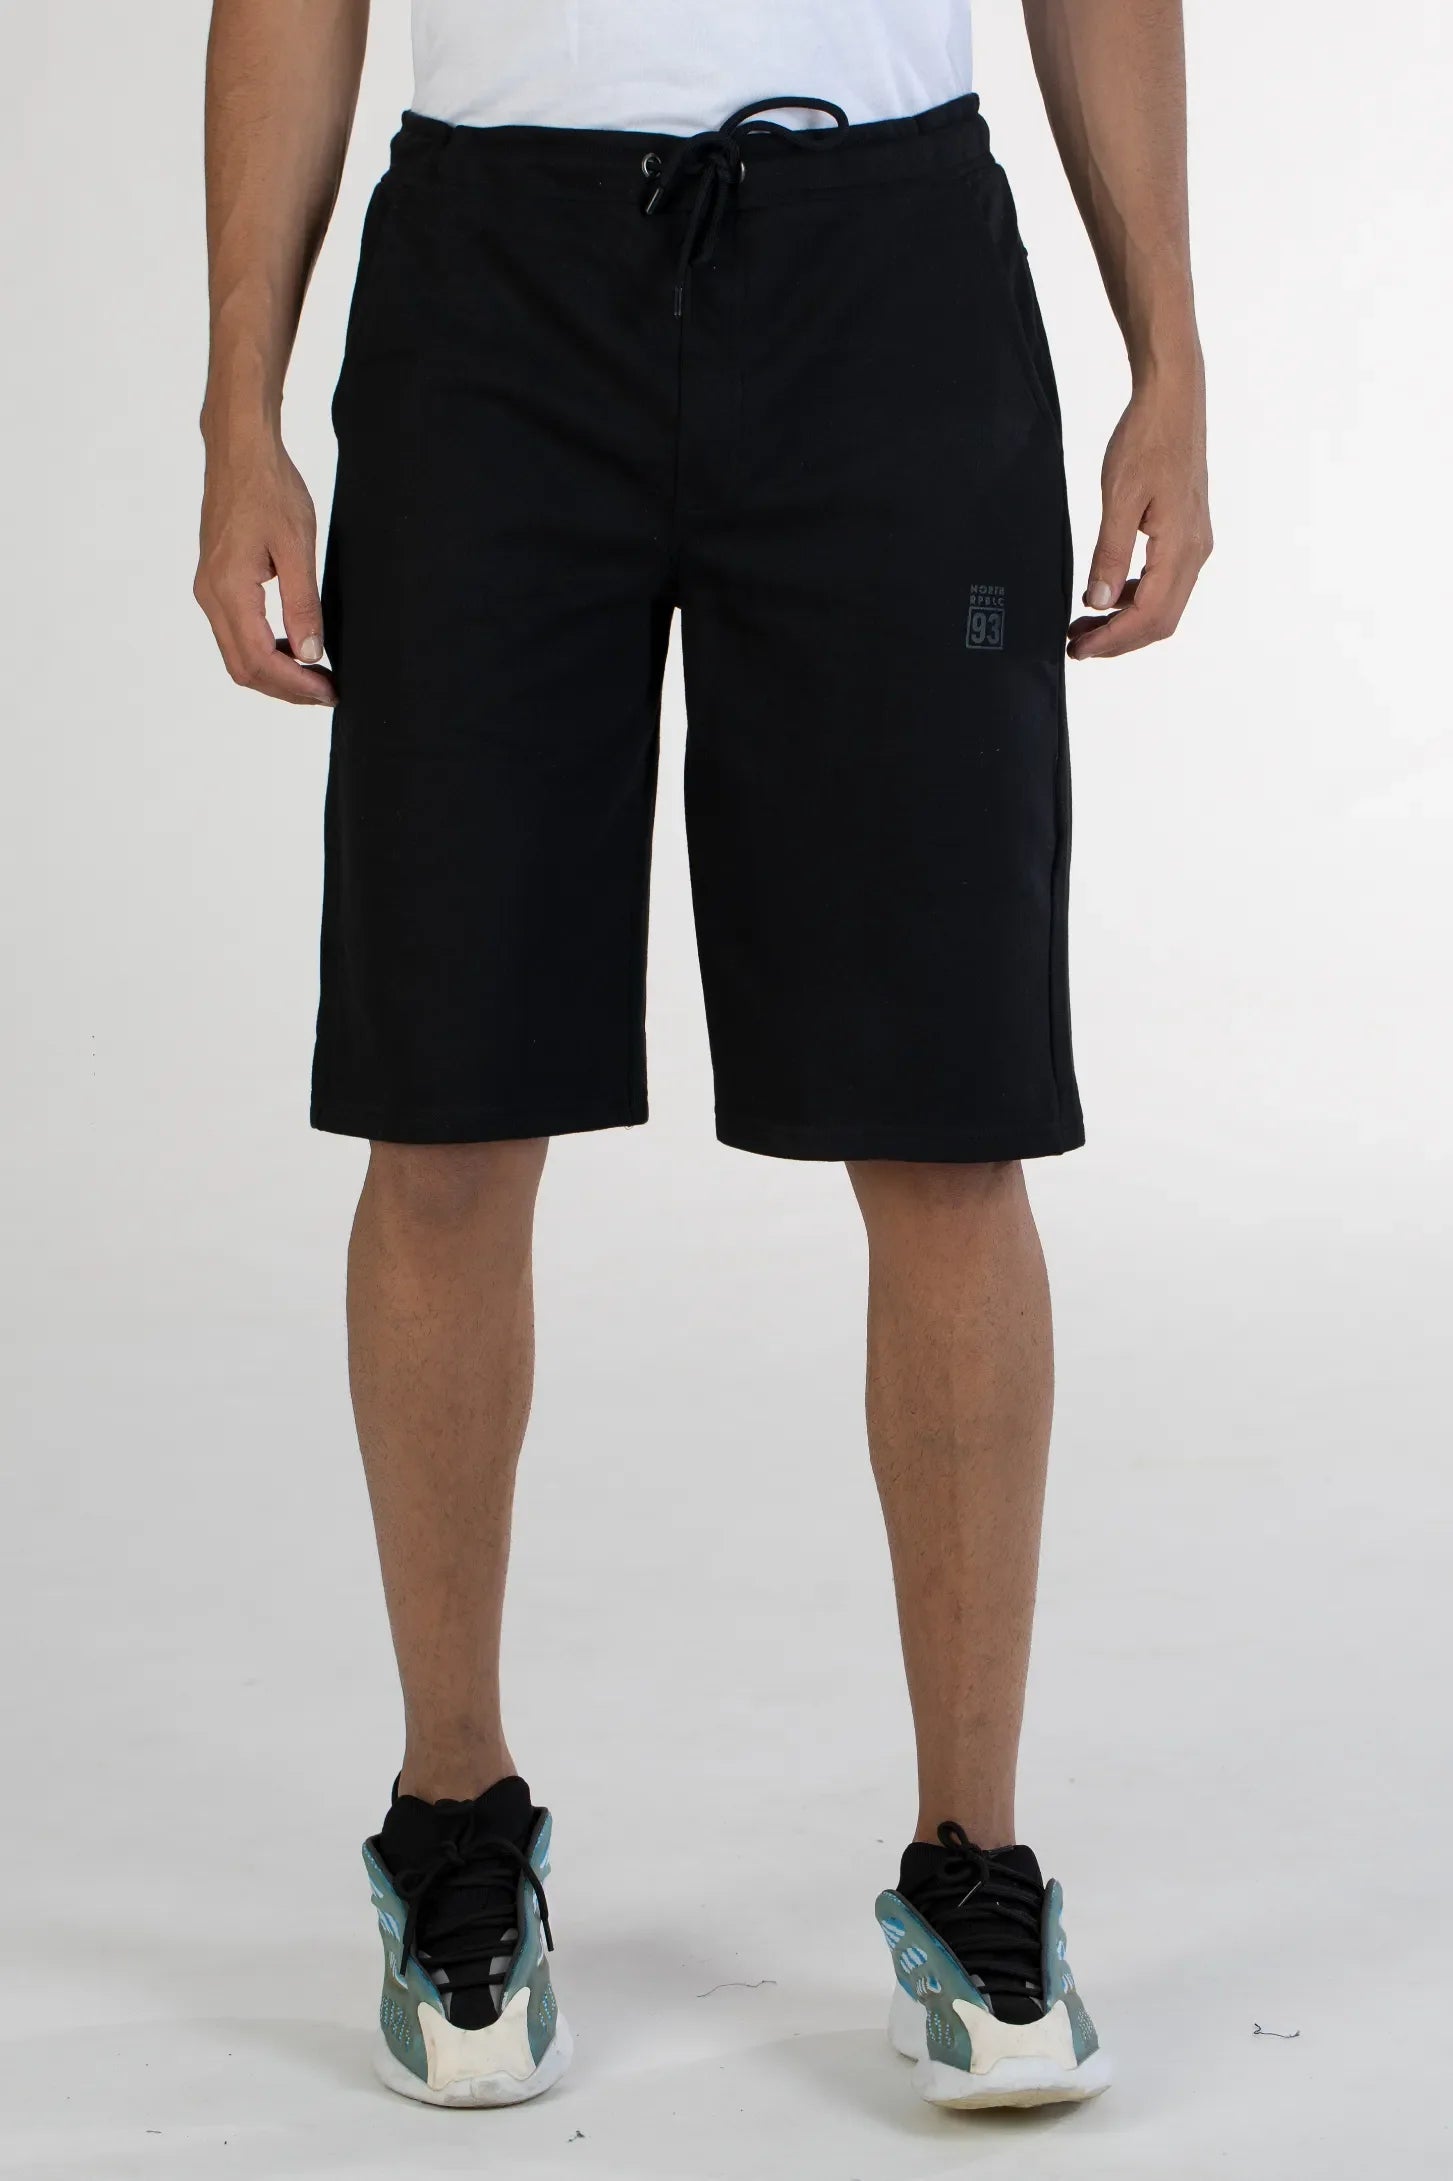 black solid knit cotton men's shorts